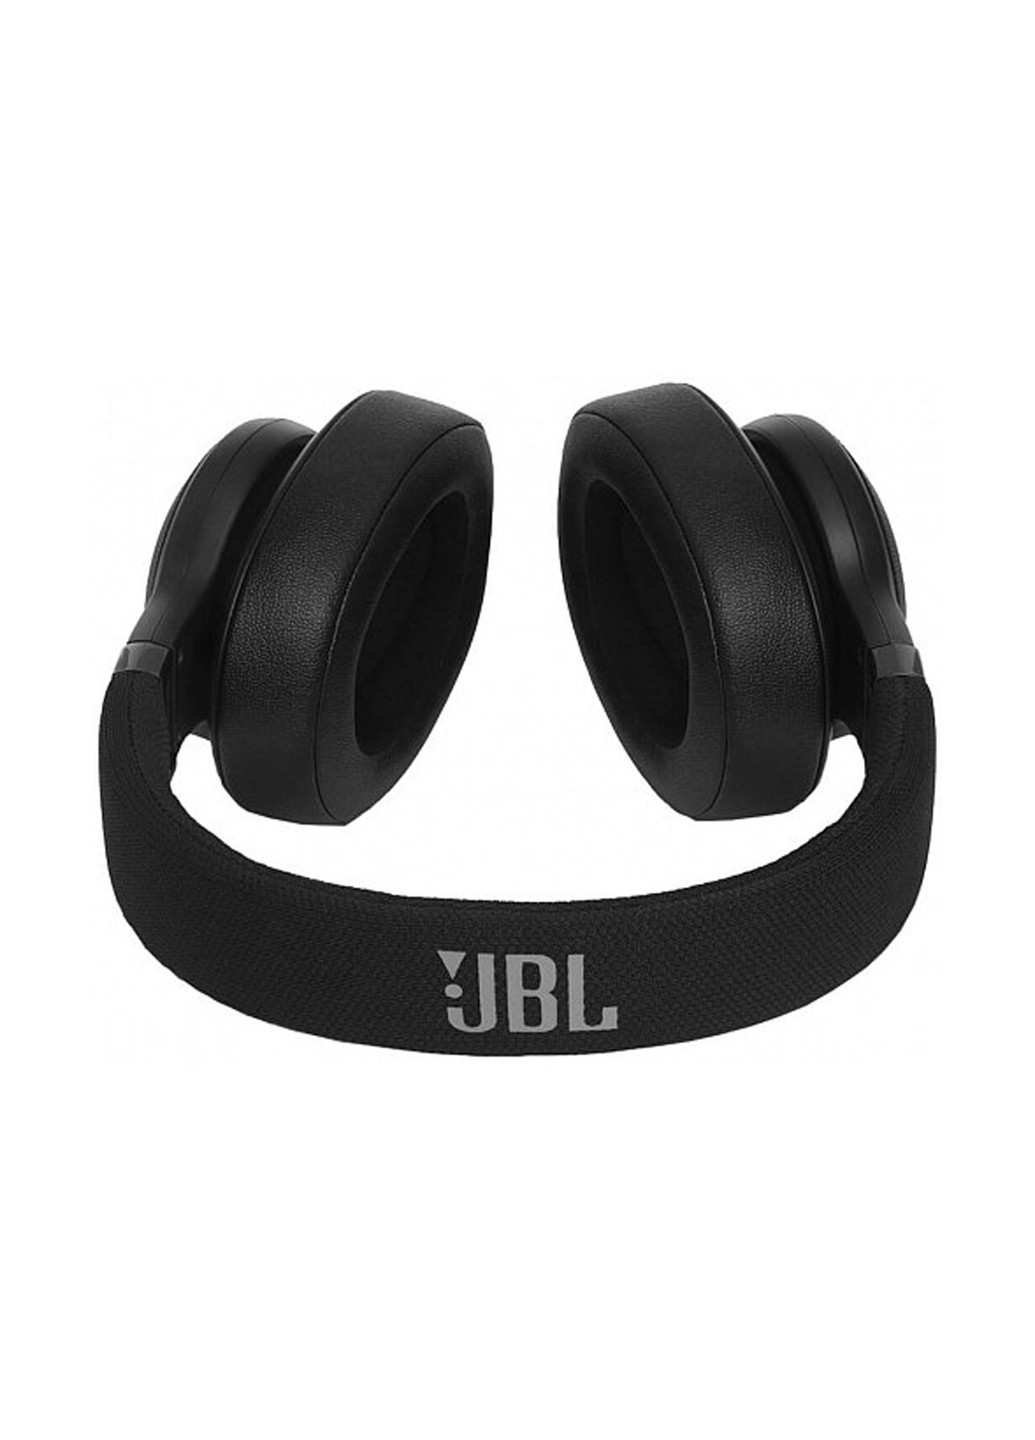 Навушники E55BT Black (E55BTBLK) JBL e55bt black (jble55btblk) (160880272)